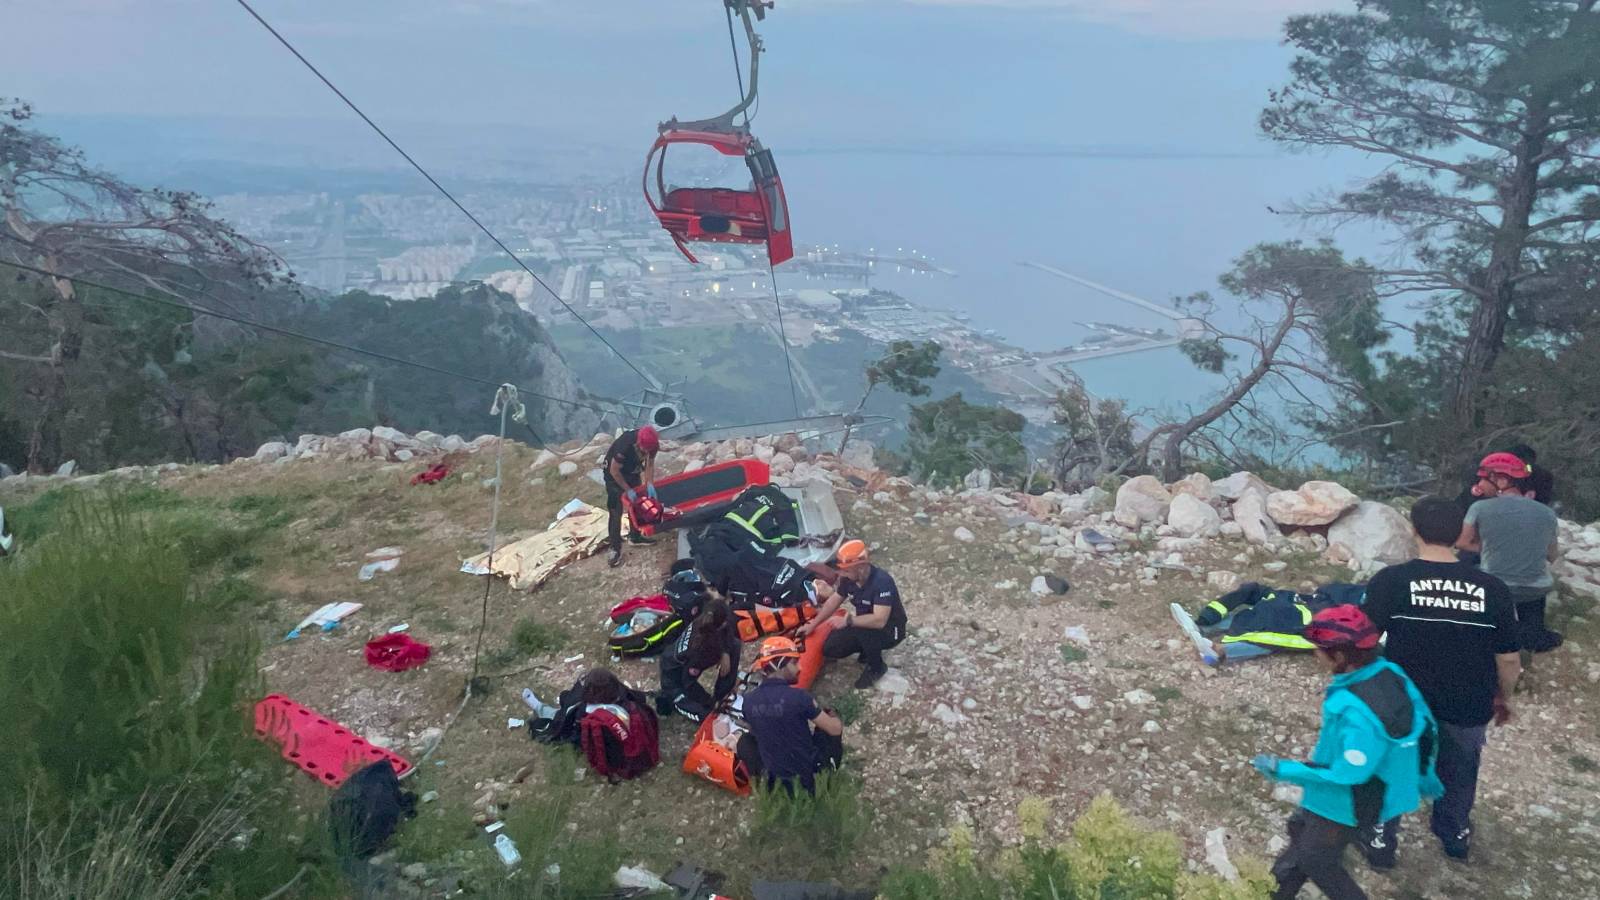 Antalya'da 1 kişinin öldüğü teleferik kazasında korku dolu anlar kameraya  yansıdı - Turkish Post